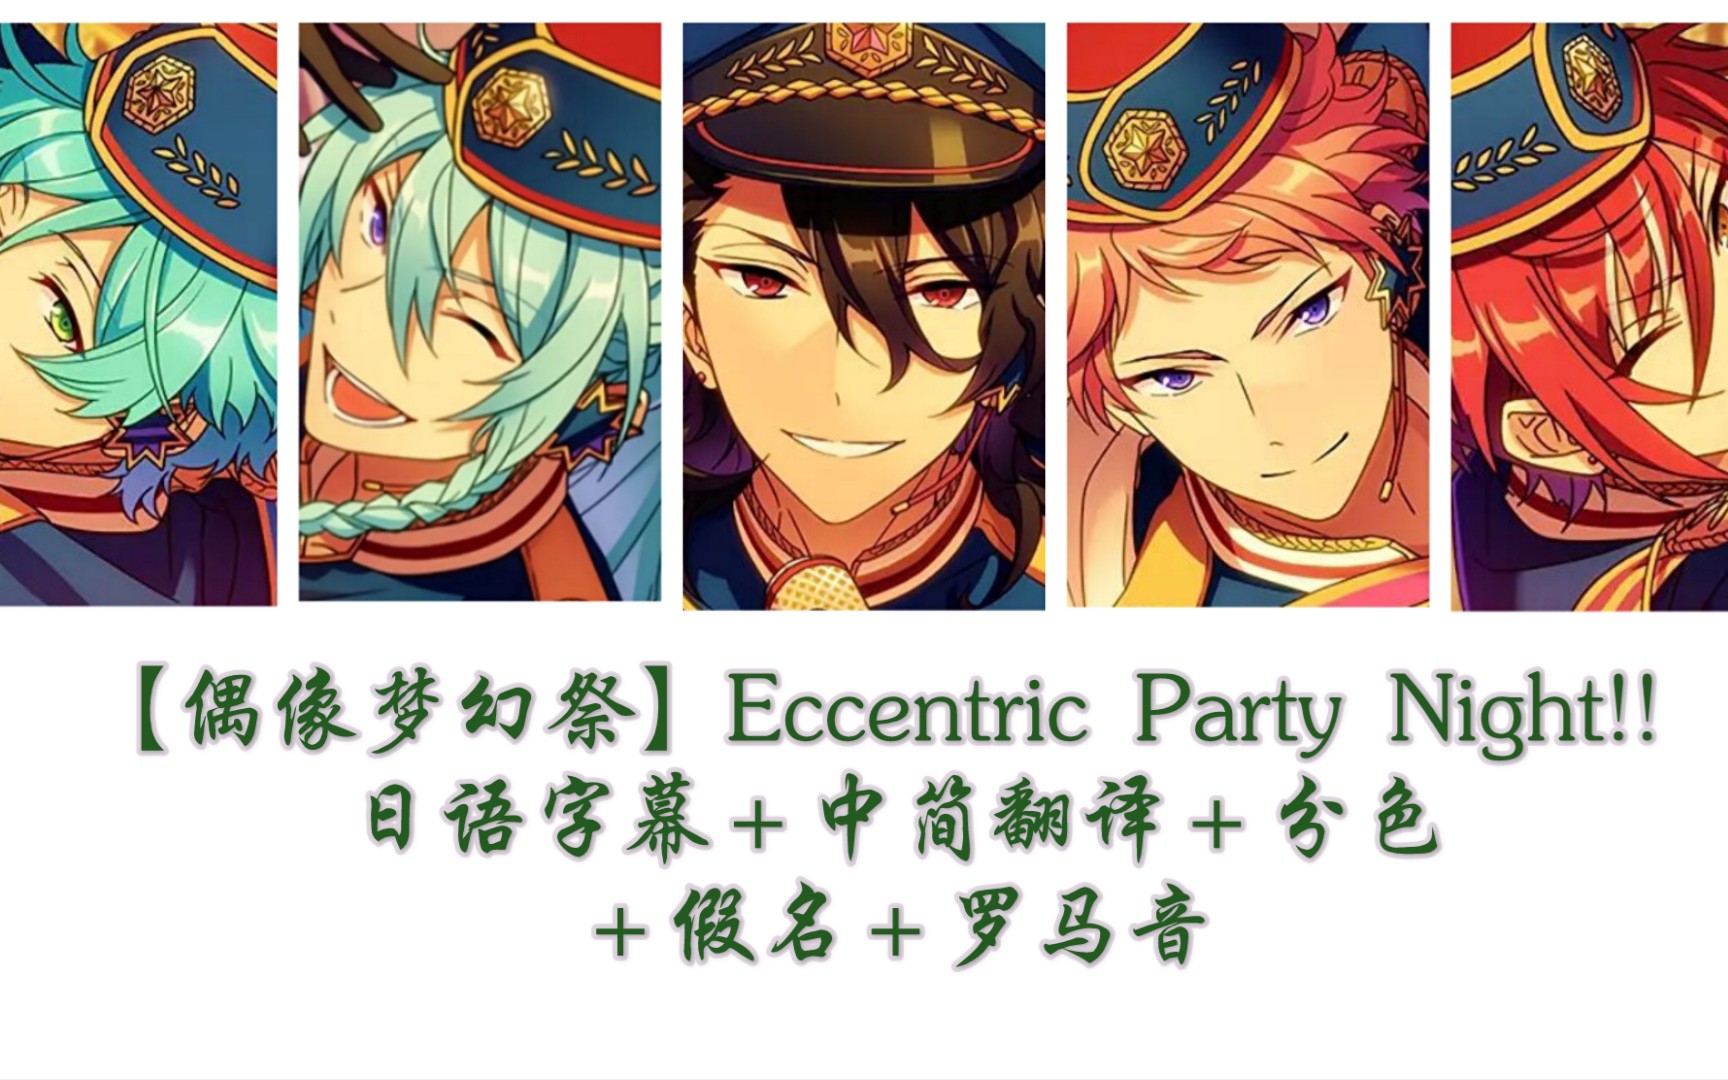 【偶像梦幻祭】Eccentric Party Night!! 日语字幕＋中简翻译＋分色＋假名＋罗马音